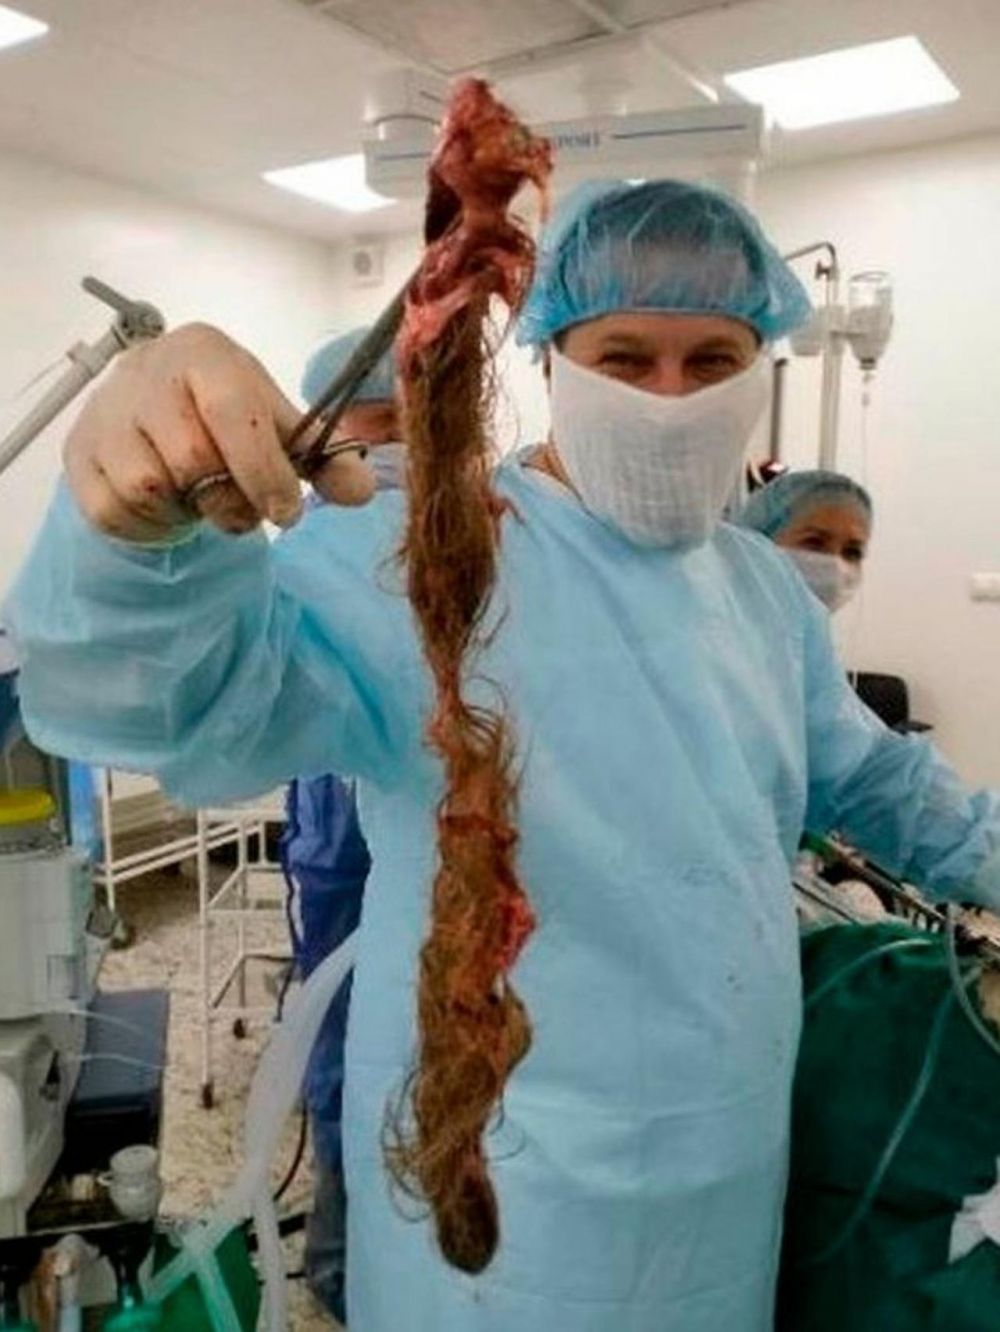 Wanita ini mengeluh sakit perut, dokter temukan kista gumpalan rambut